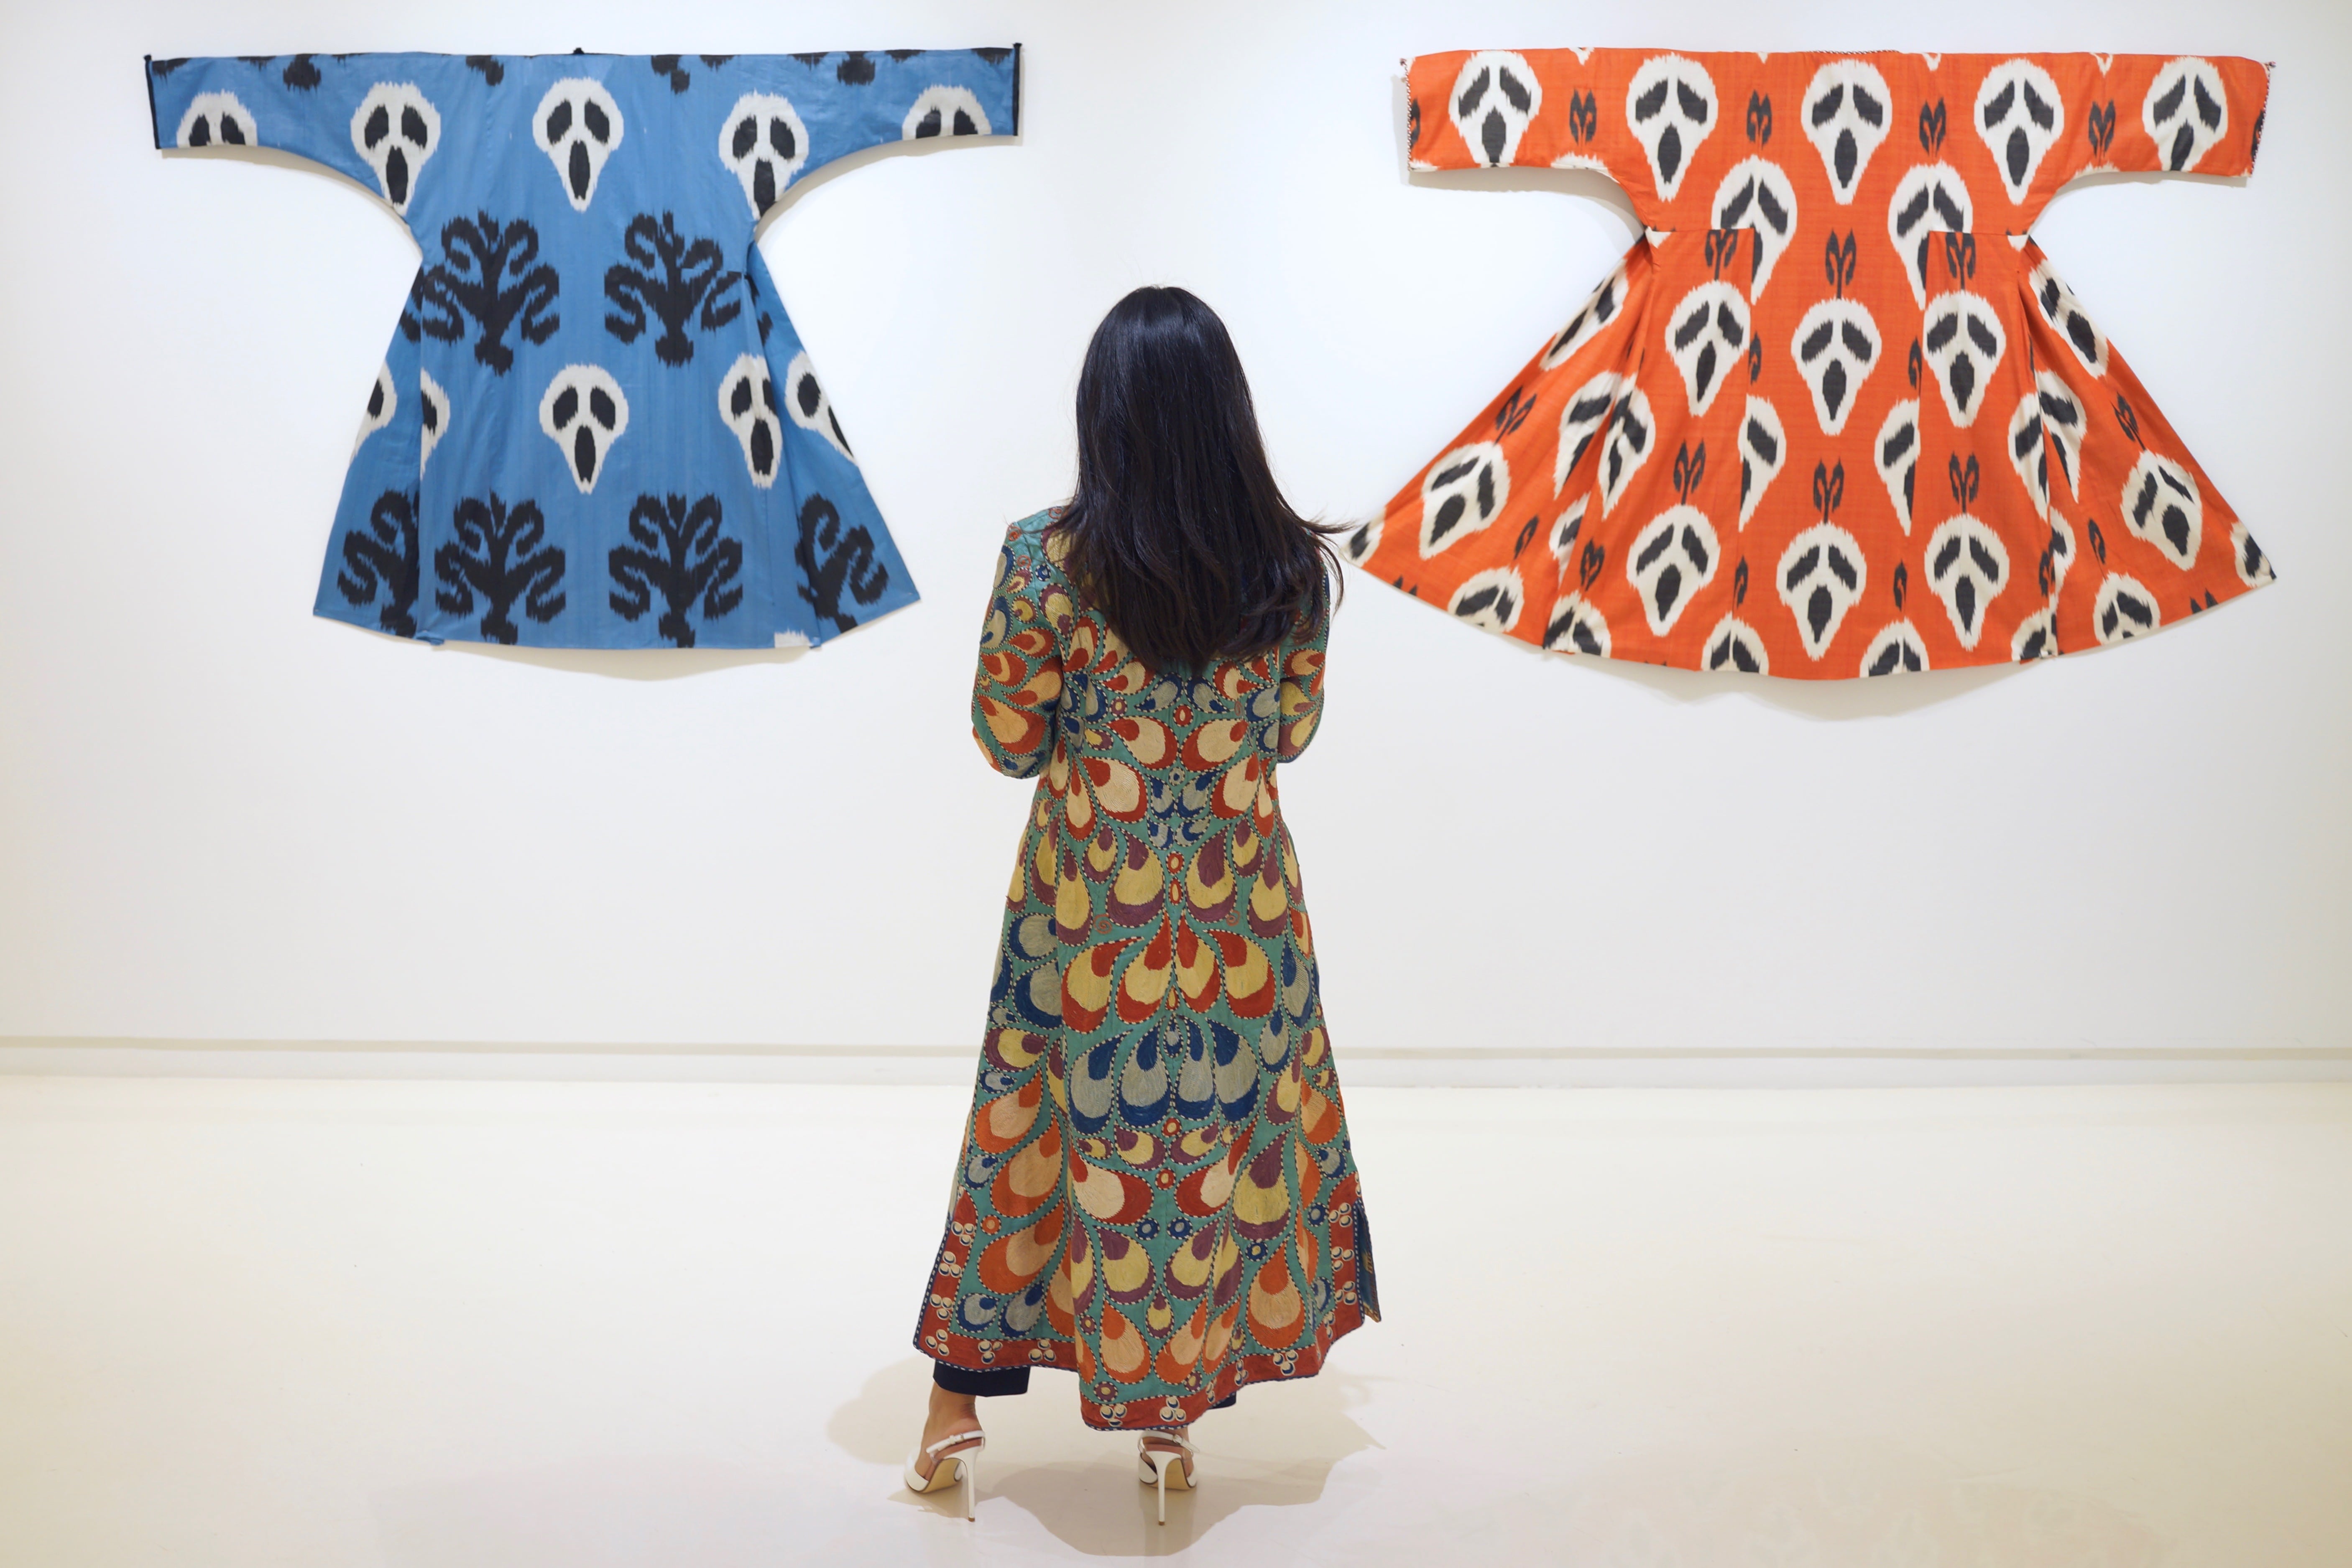 Работы художниц из Центральной Азии были выставлены в Нью-Йорке